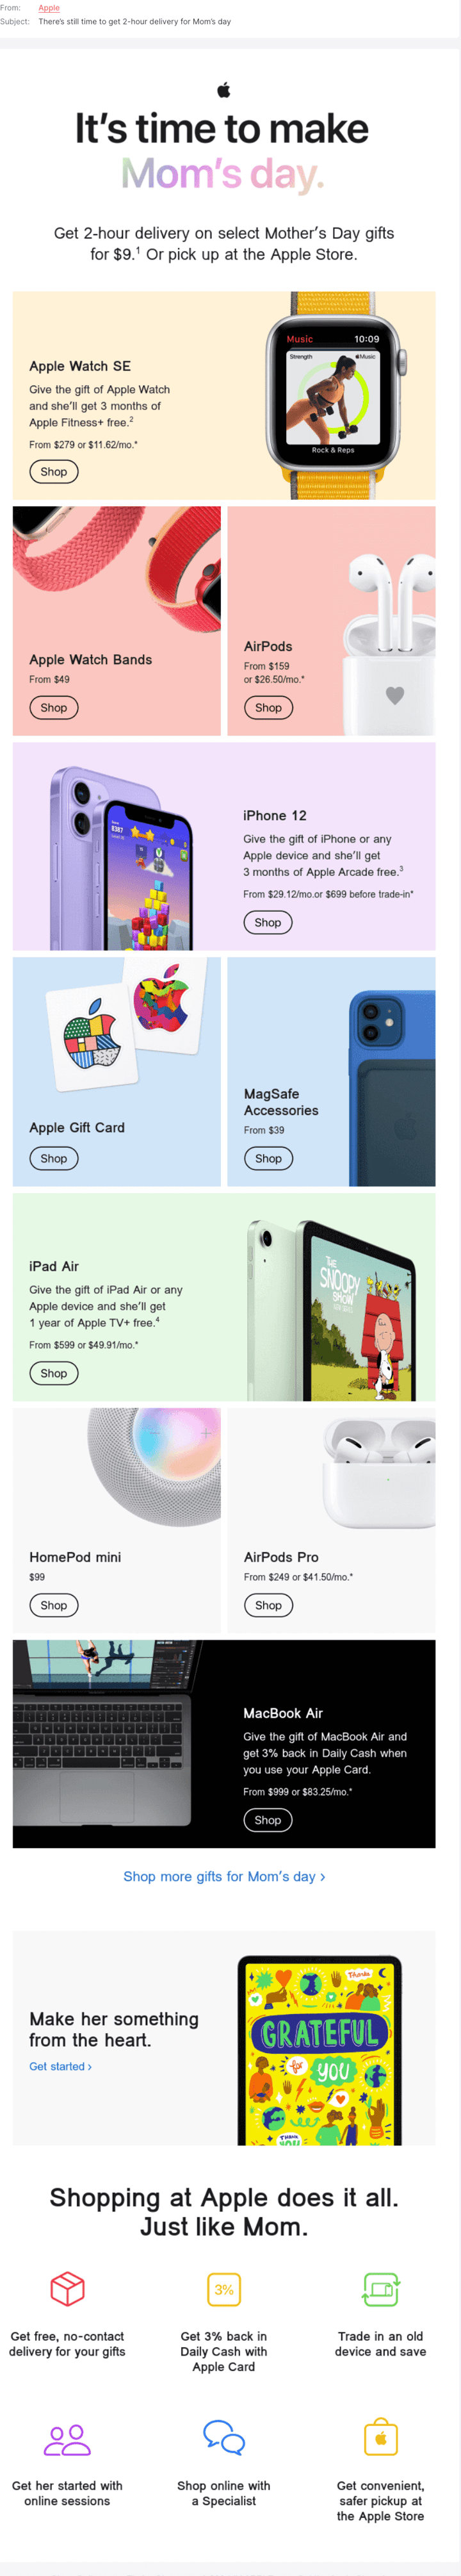 Screenshot: Newsletter-Kampagne von Apple mit verschiedenen Angeboten.